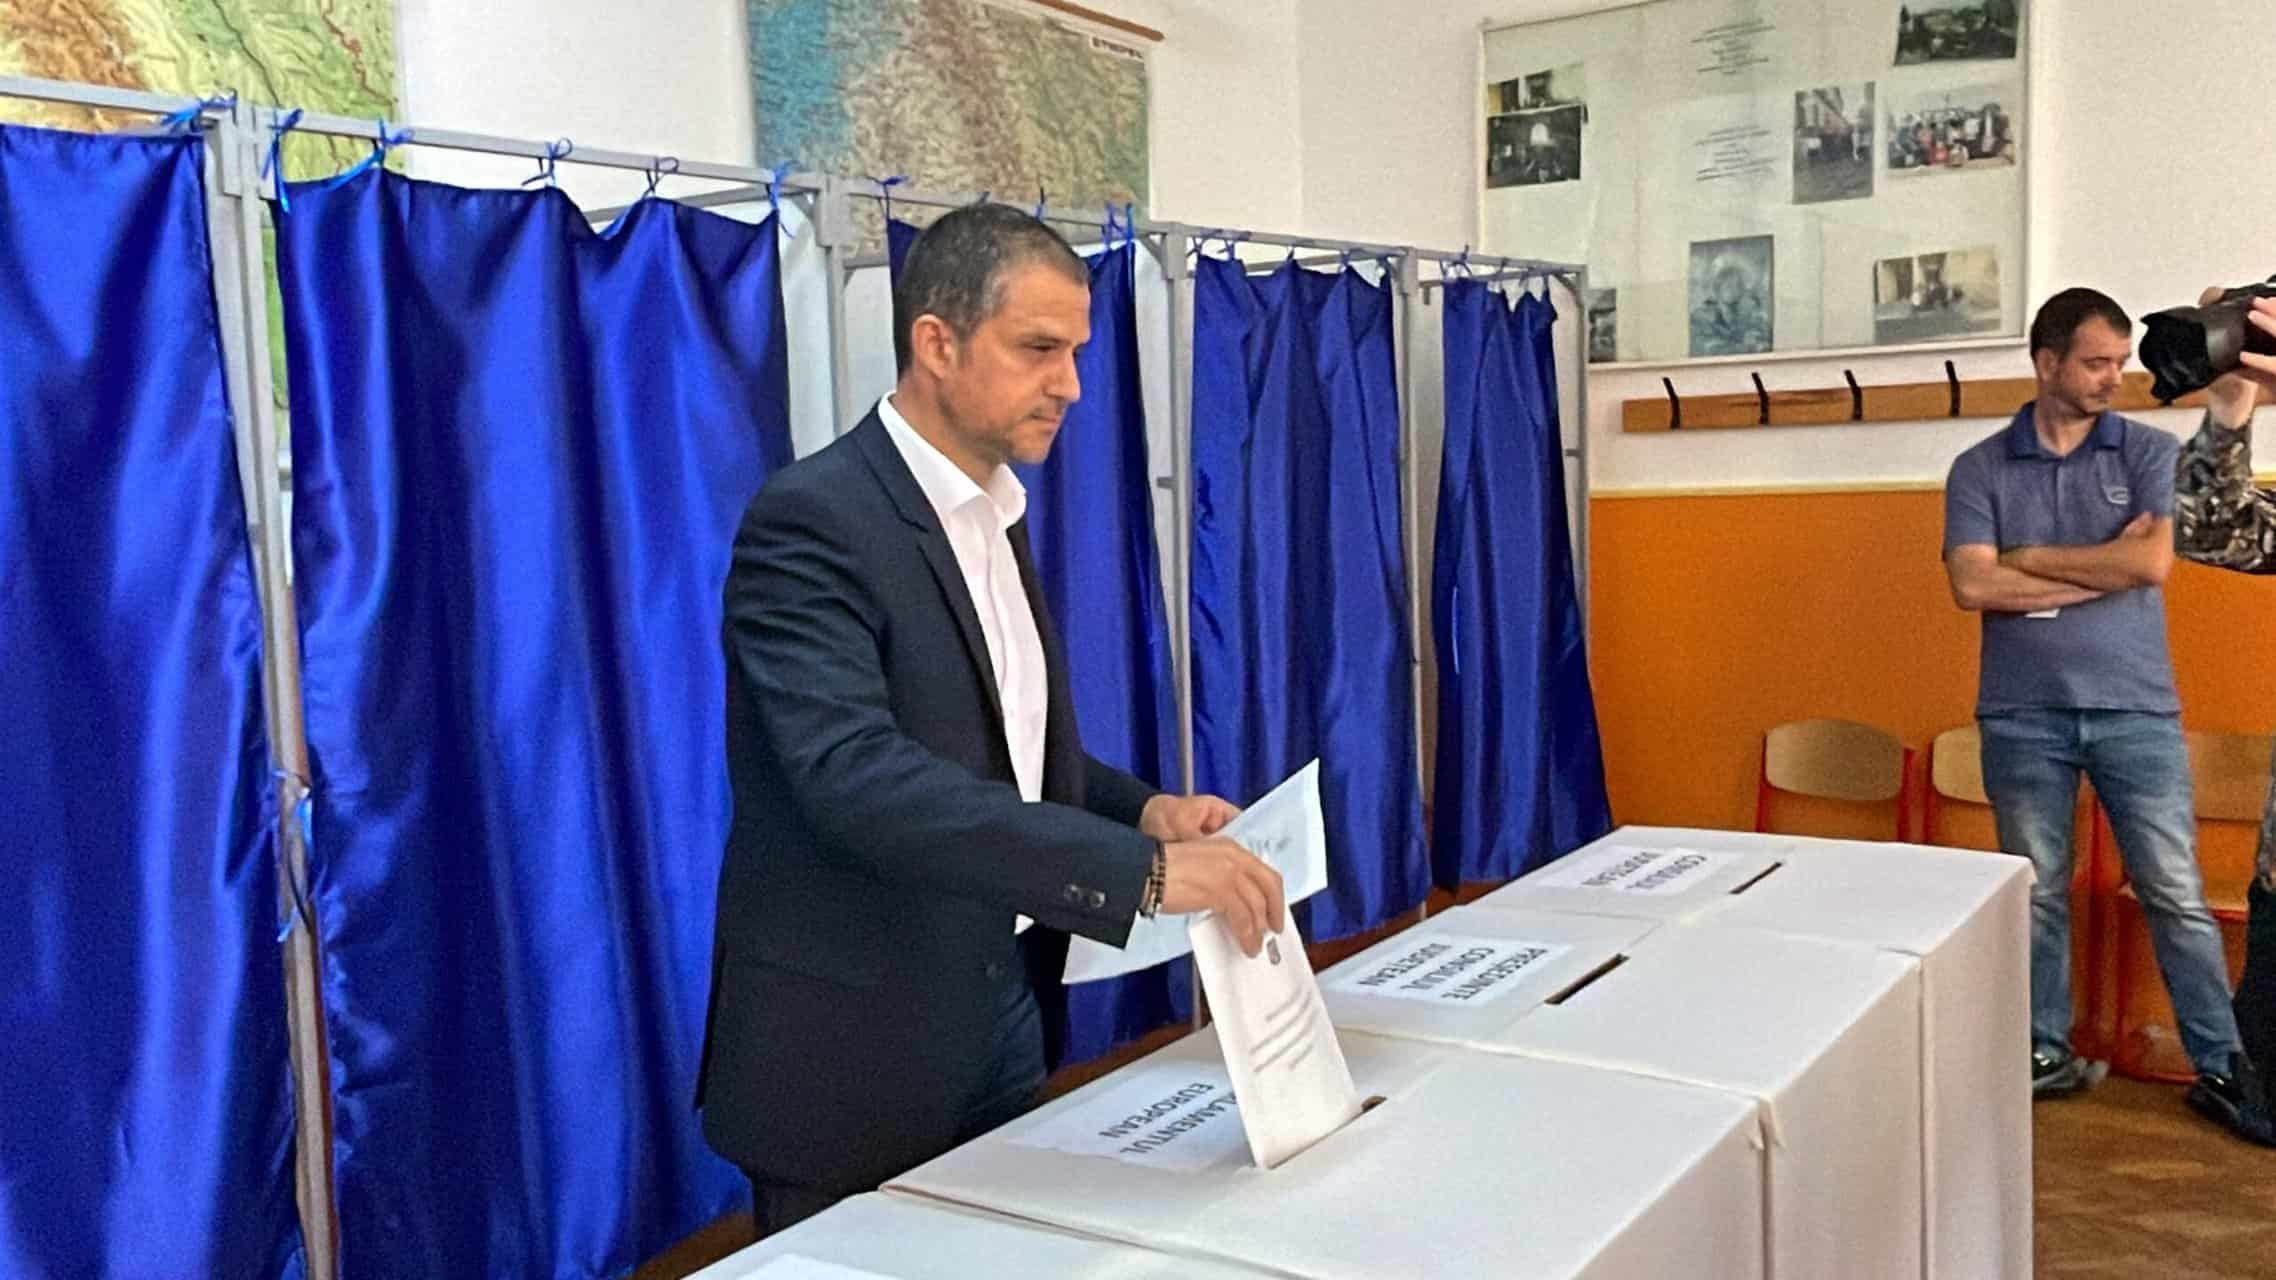 bogdan trif, candidatul psd pentru președinția cj sibiu, a mers la vot dis-de-dimineață: „am votat cu speranța că se va face o schimbare” (video)